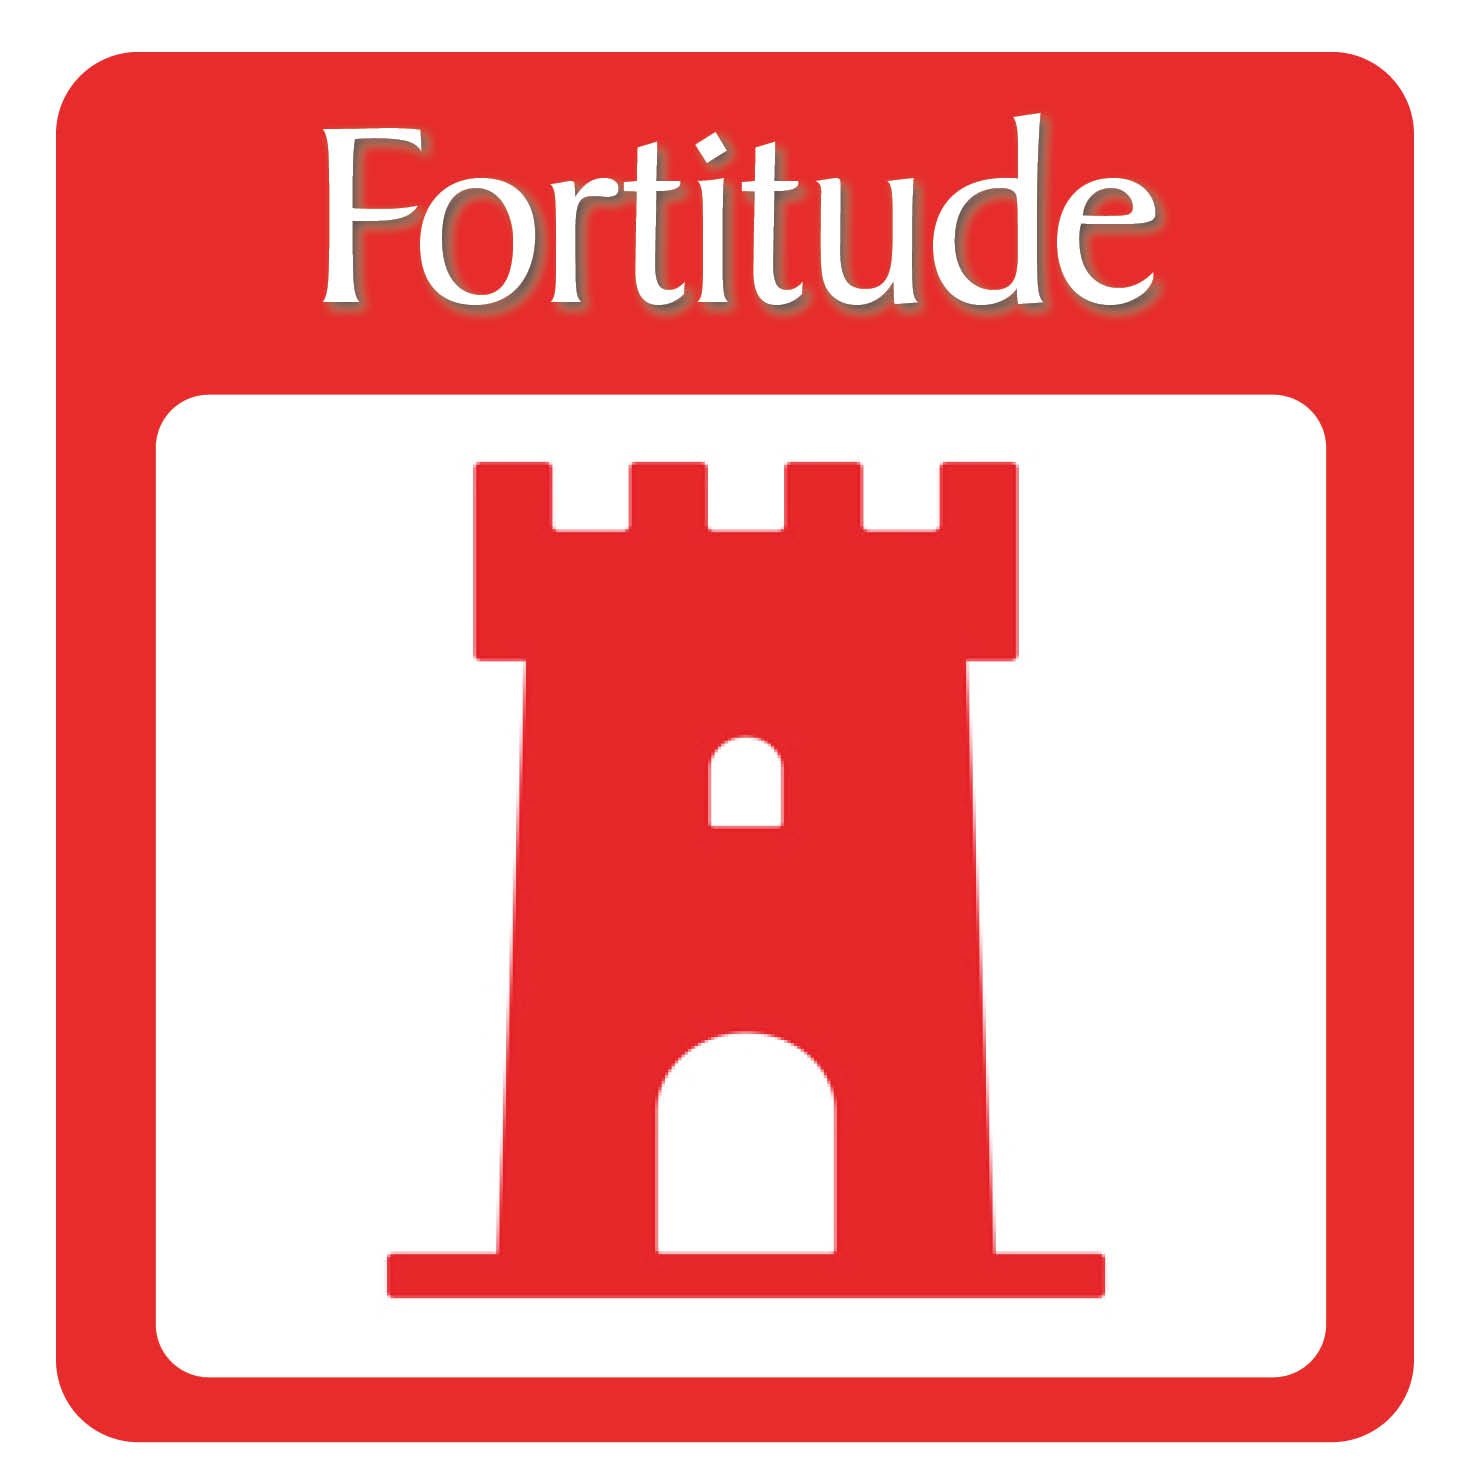 catholic fortitude symbol